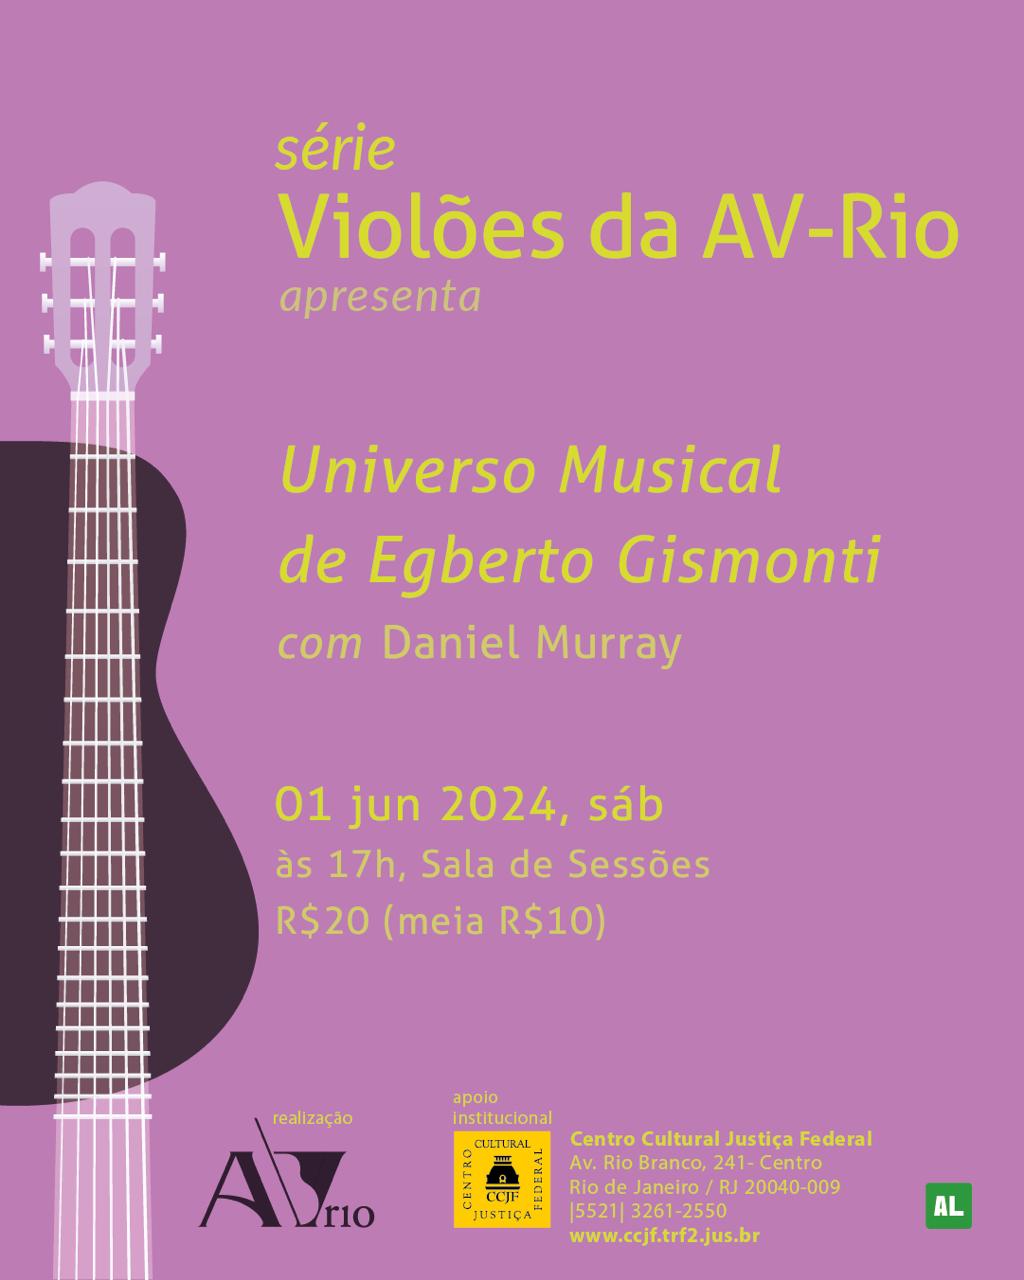 série Violões da AV-Rio apresenta Daniel Murray-universo musical de Egberto Gismonti-20 reais-meia 10 reais